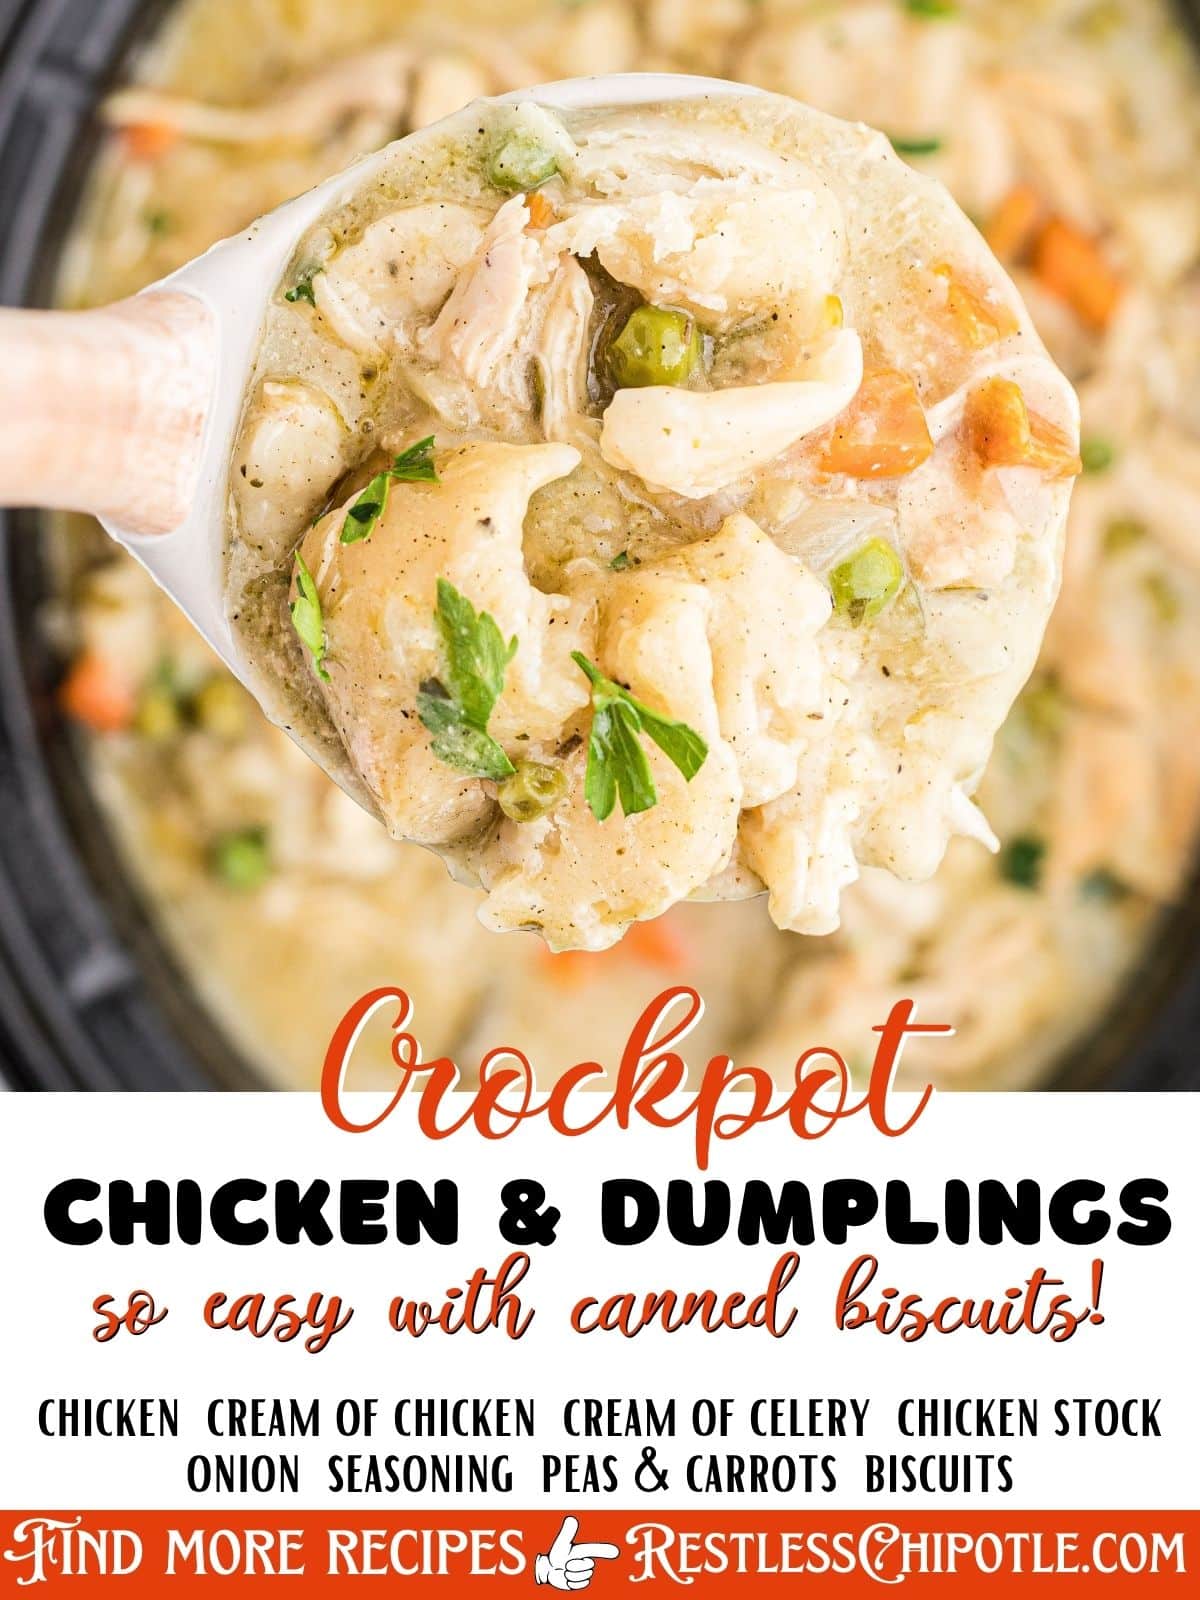 Crock Pot Chicken & Dumplings - Plain Chicken